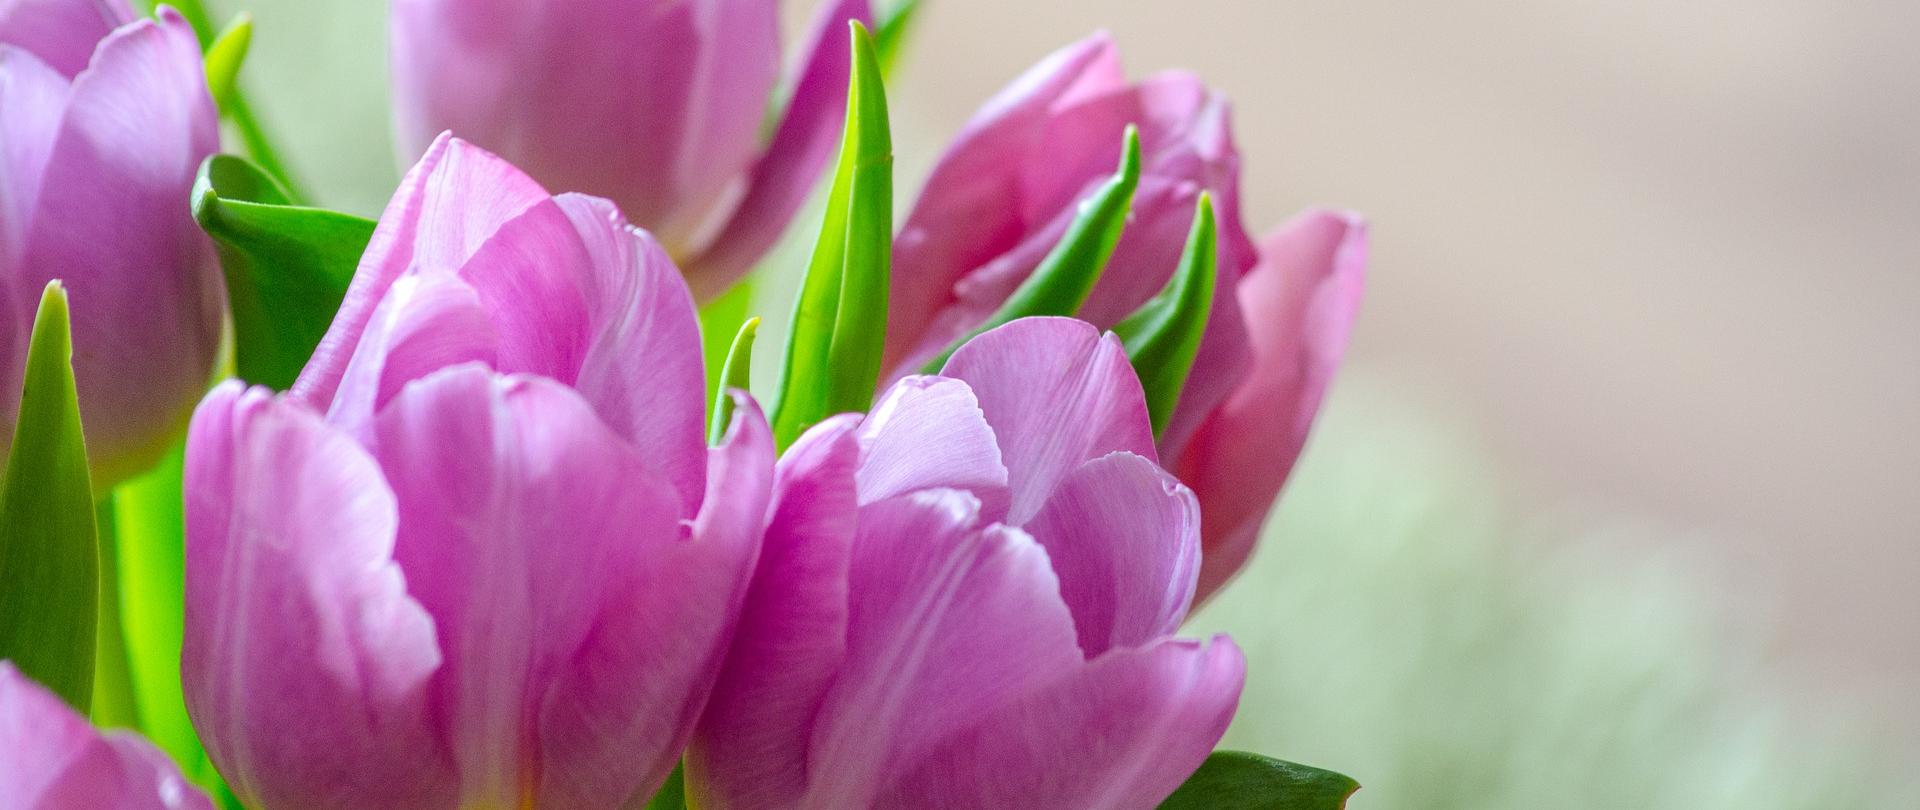 Zbliżenie na główki jasnofioletowych tulipanów zebranych w bukiet, 